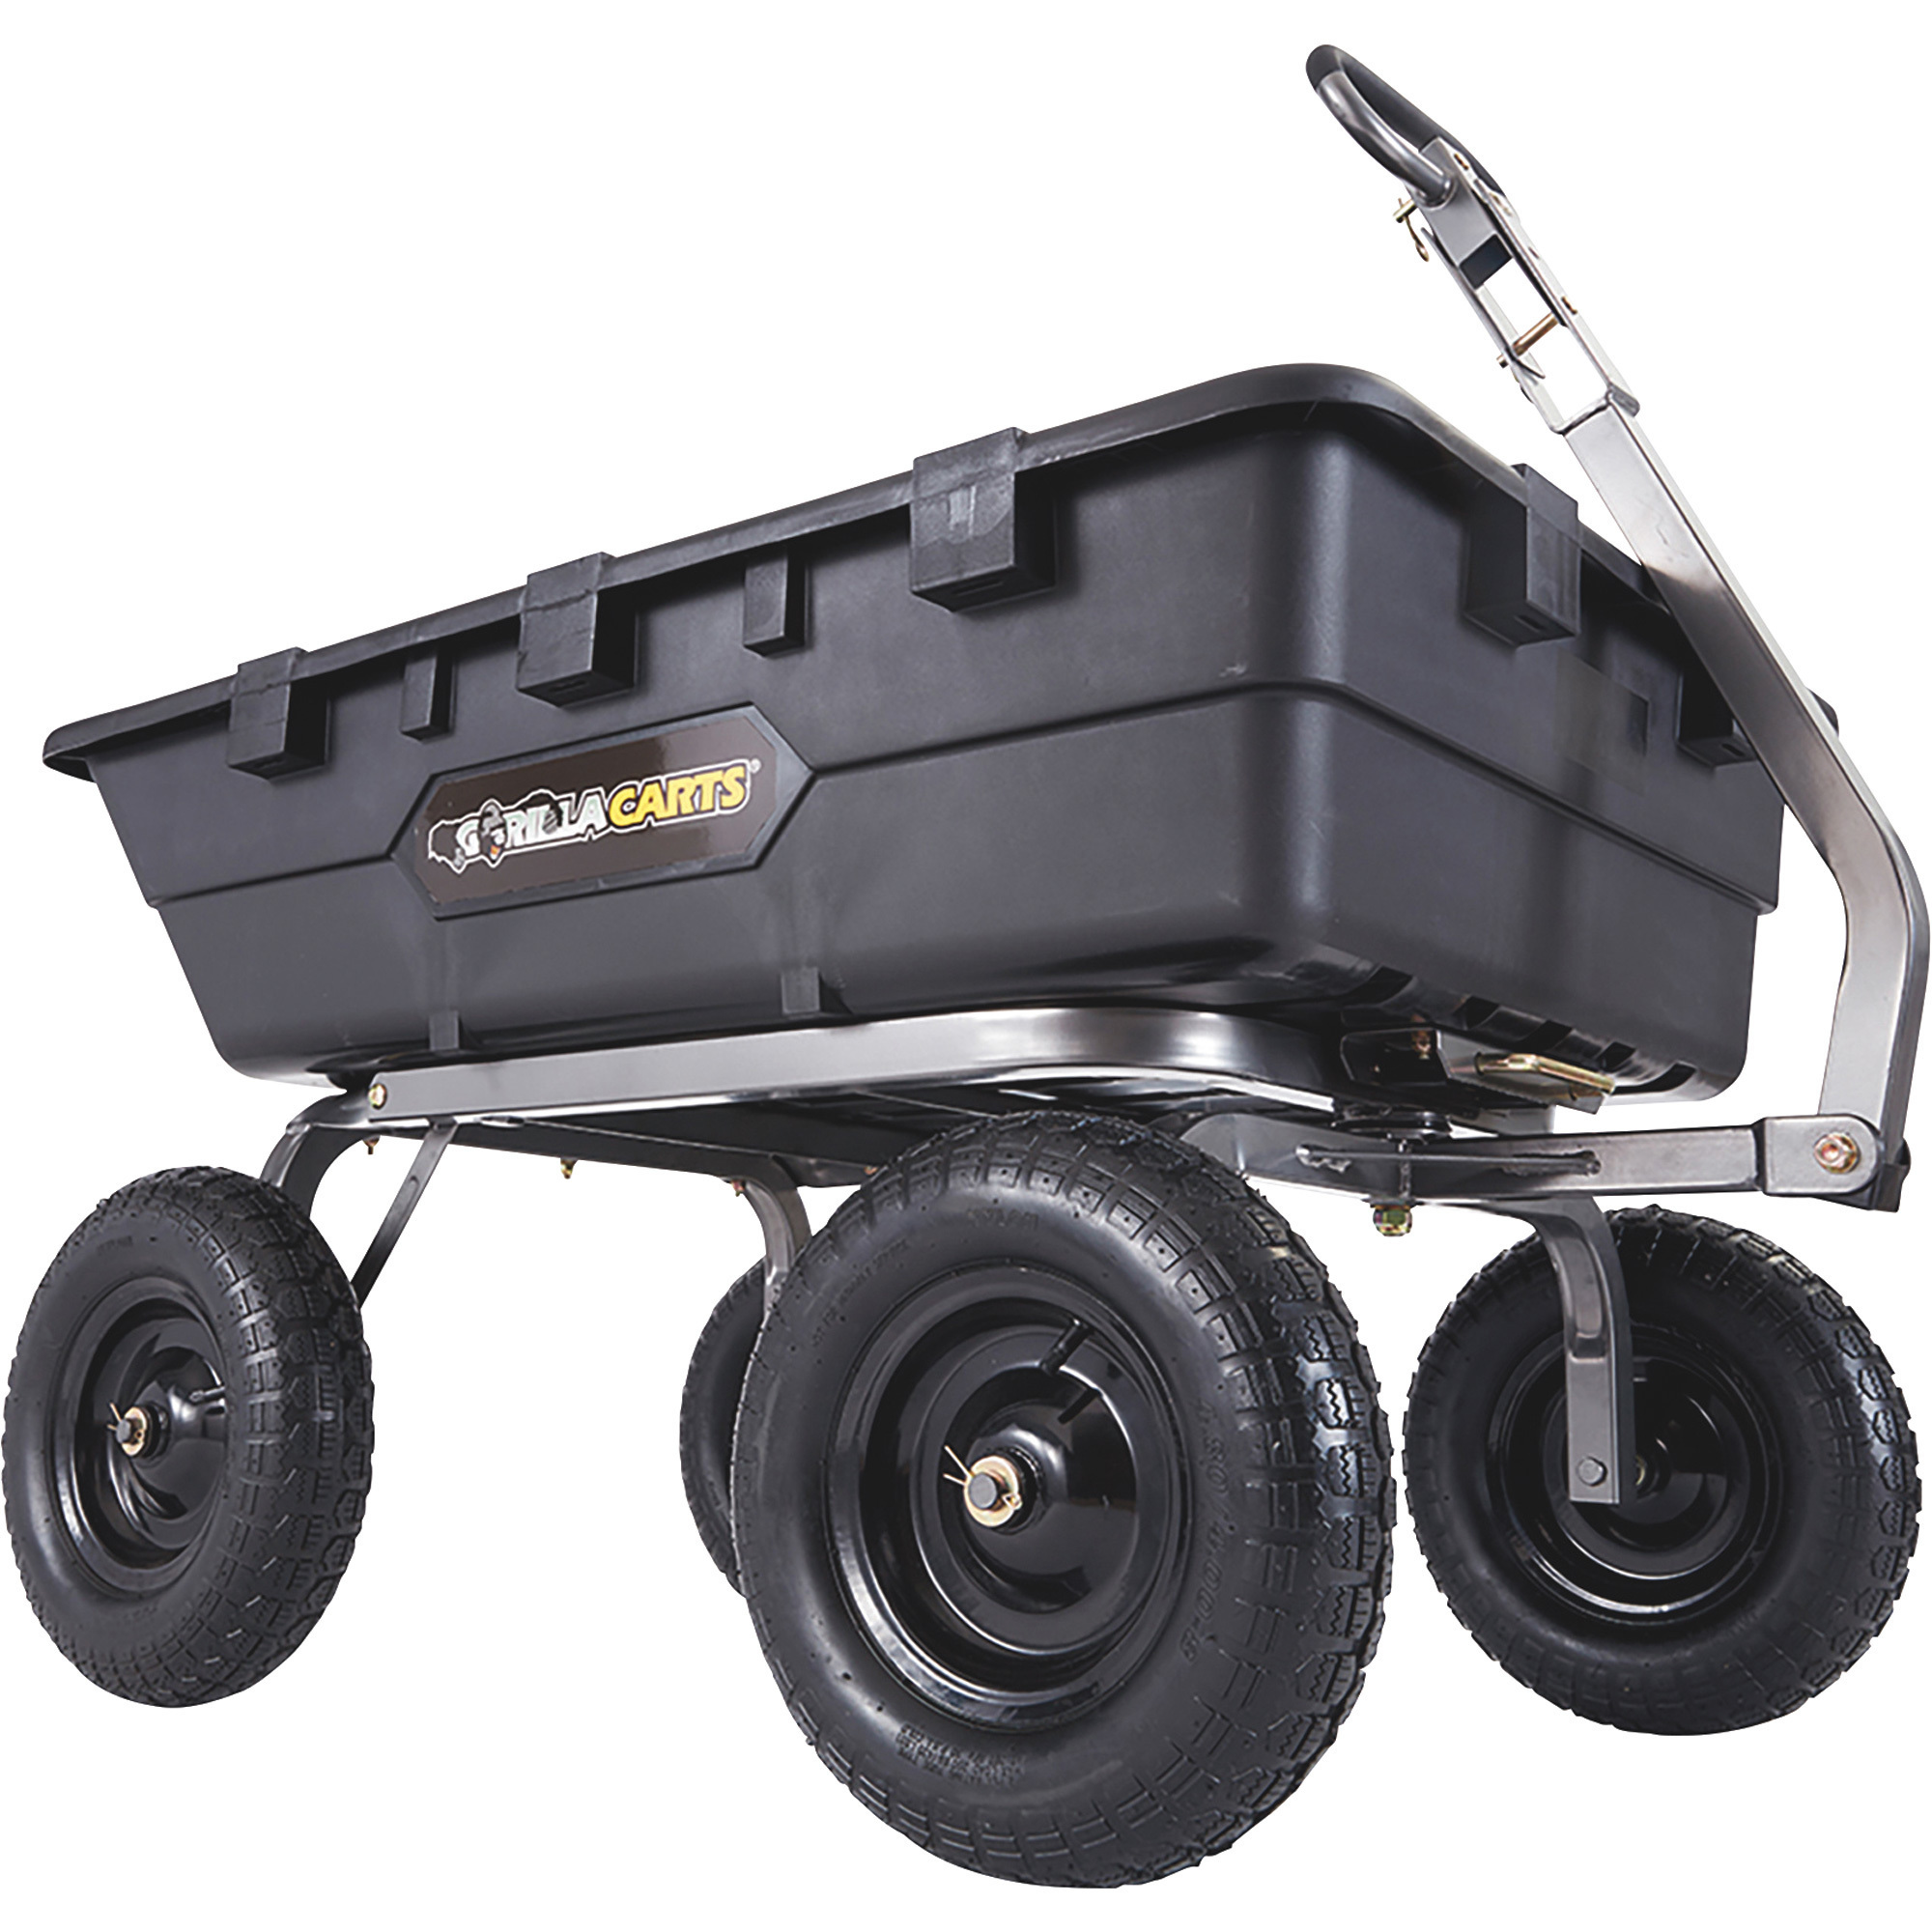 Gorilla Carts Heavy-Duty Poly Yard Cart — 1500-Lb. Capacity, Model